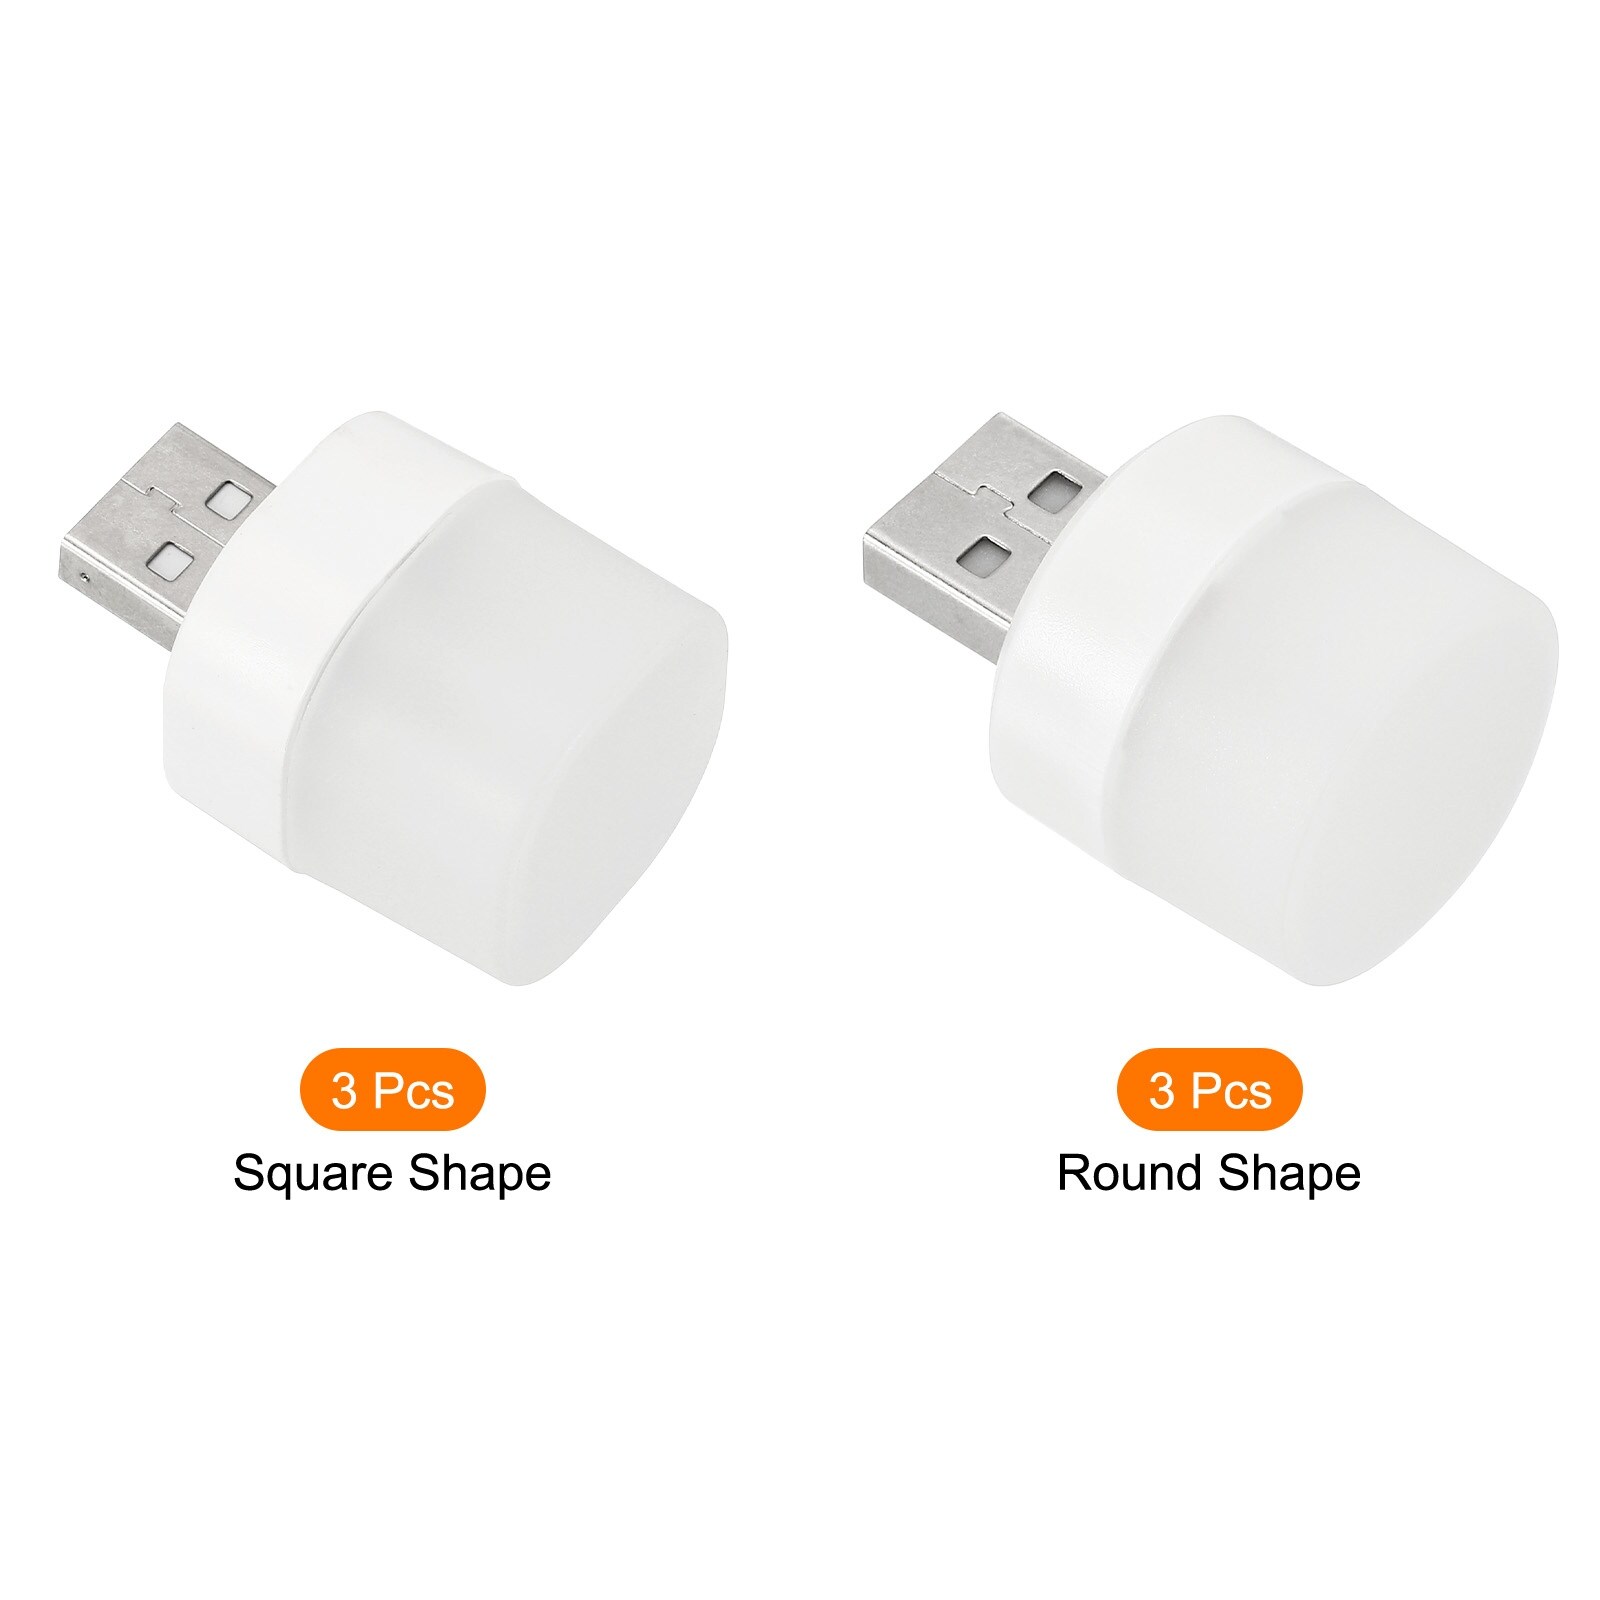 6pcs USB Night Light Portable Plug in Mini LED Lamp Bulb Warm White - White, Warm White